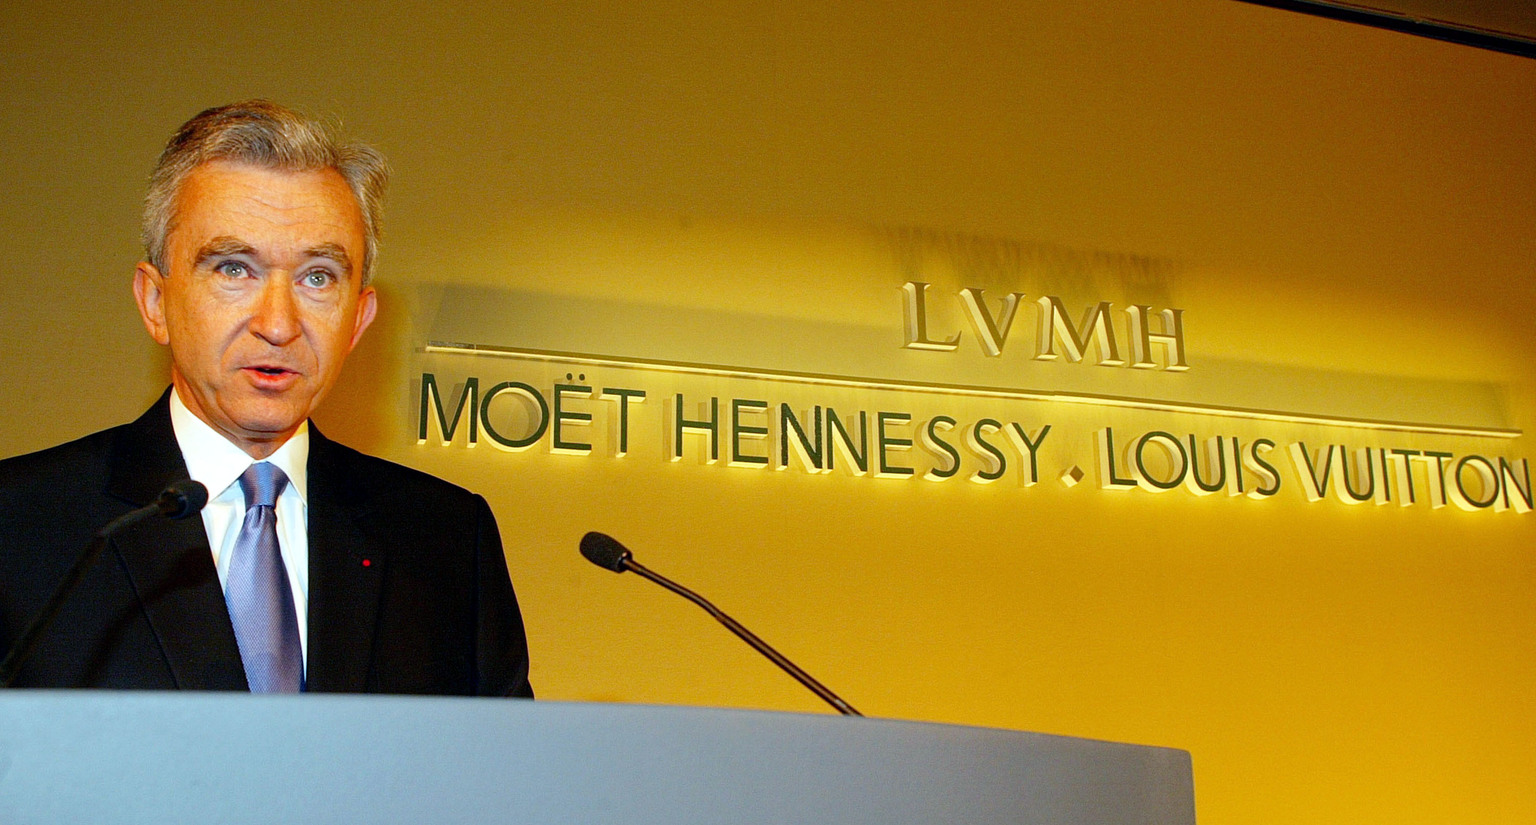 Moët Hennessy Louis Vuitton Stock Analysis, LVMH Stock Analysis, $LVMH